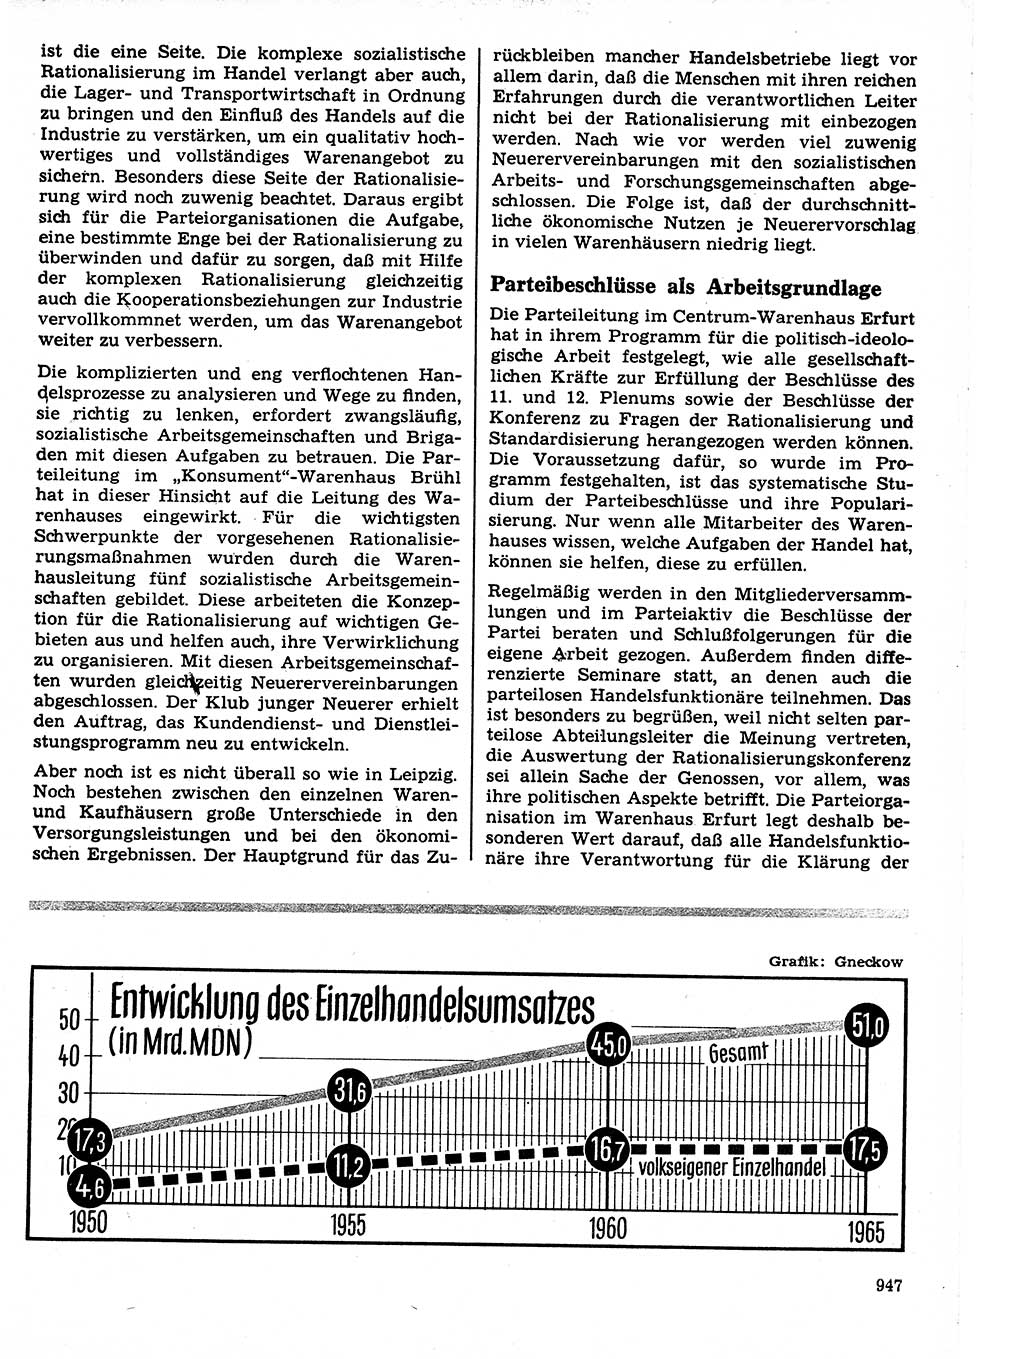 Neuer Weg (NW), Organ des Zentralkomitees (ZK) der SED (Sozialistische Einheitspartei Deutschlands) für Fragen des Parteilebens, 21. Jahrgang [Deutsche Demokratische Republik (DDR)] 1966, Seite 947 (NW ZK SED DDR 1966, S. 947)